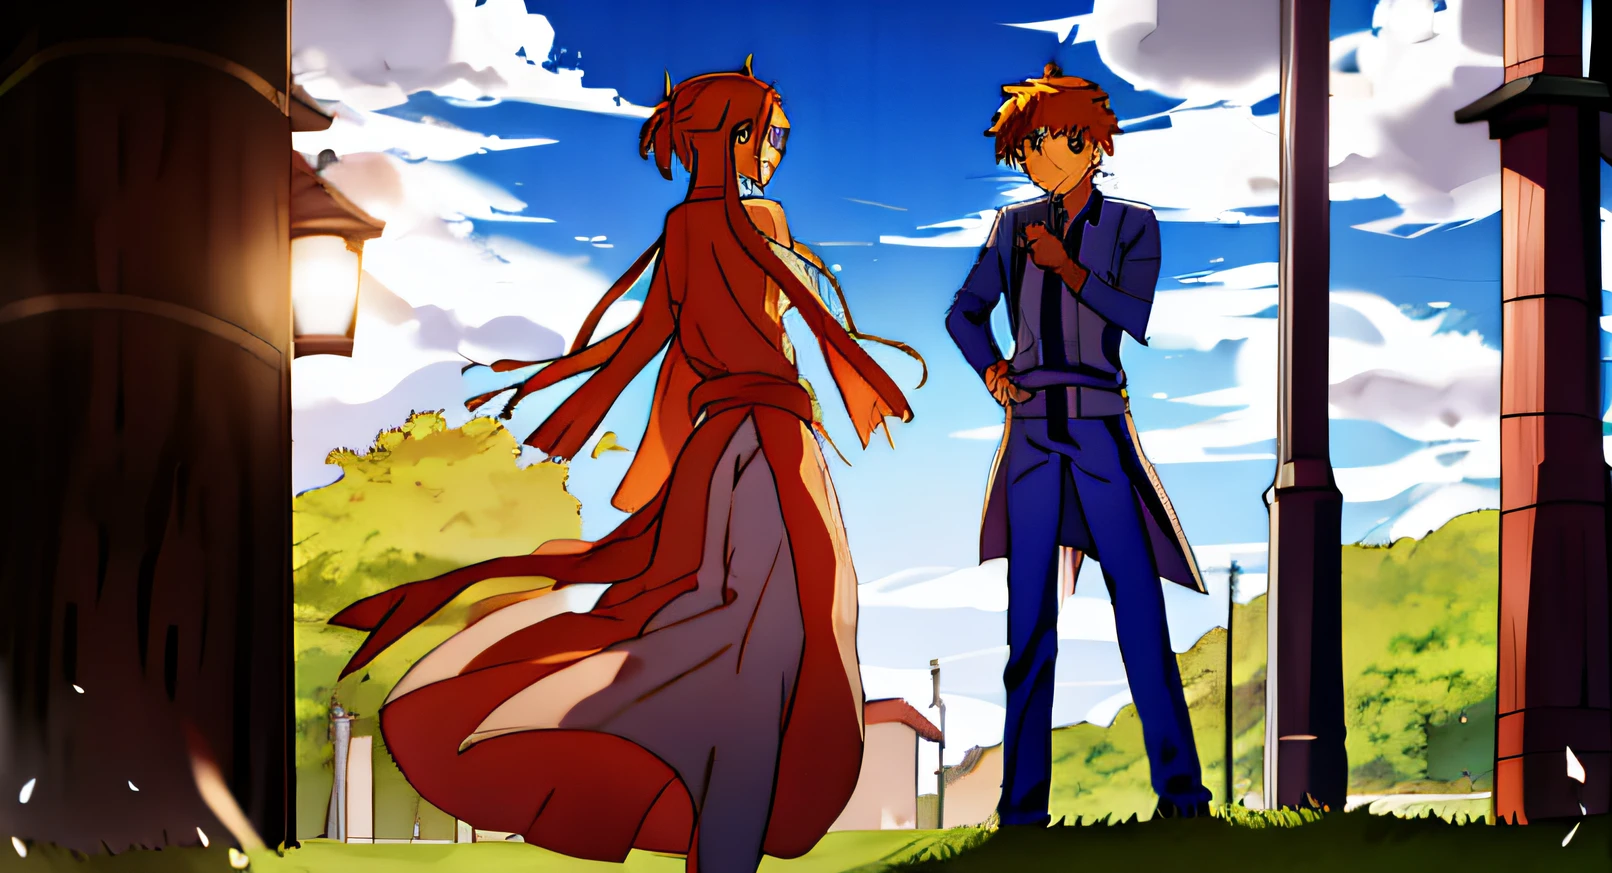 asuna and denji walking in a kingdom